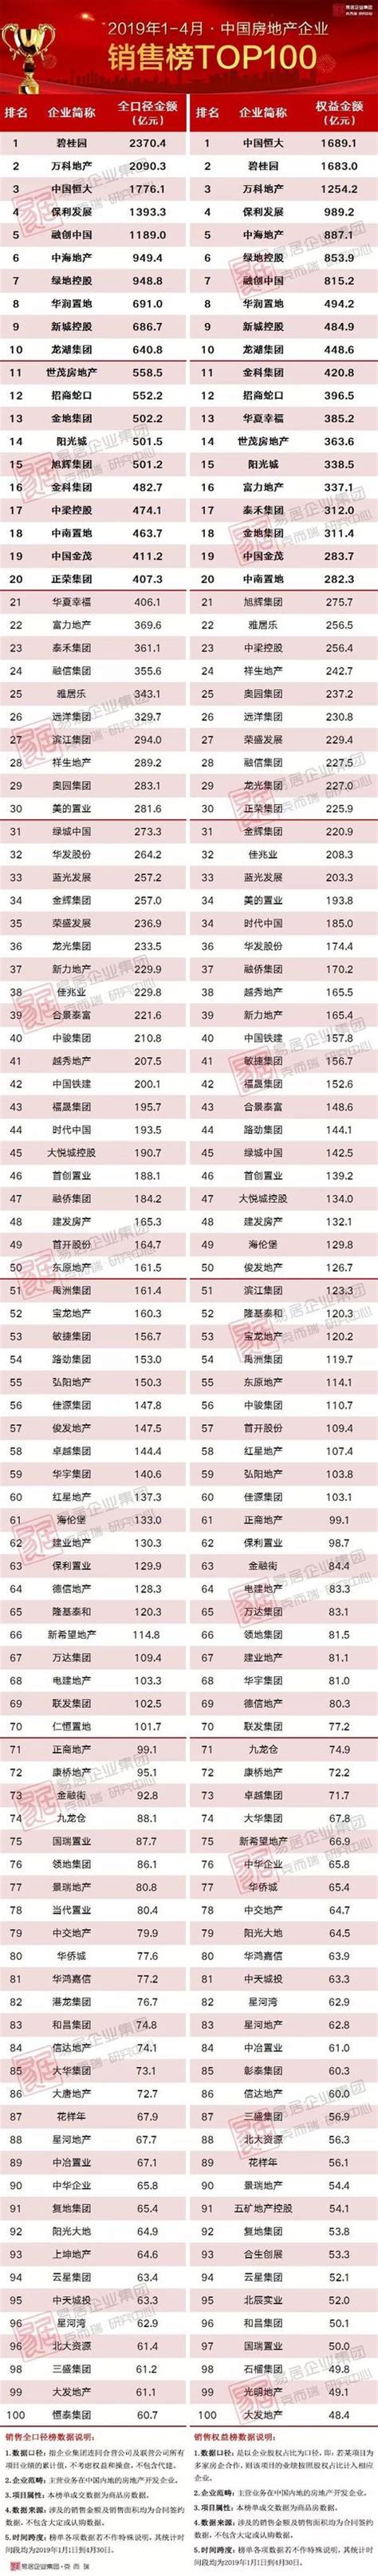 2019年1-4月中国房地产企业销售、新增货TOP100排行榜出炉！_世茂集团